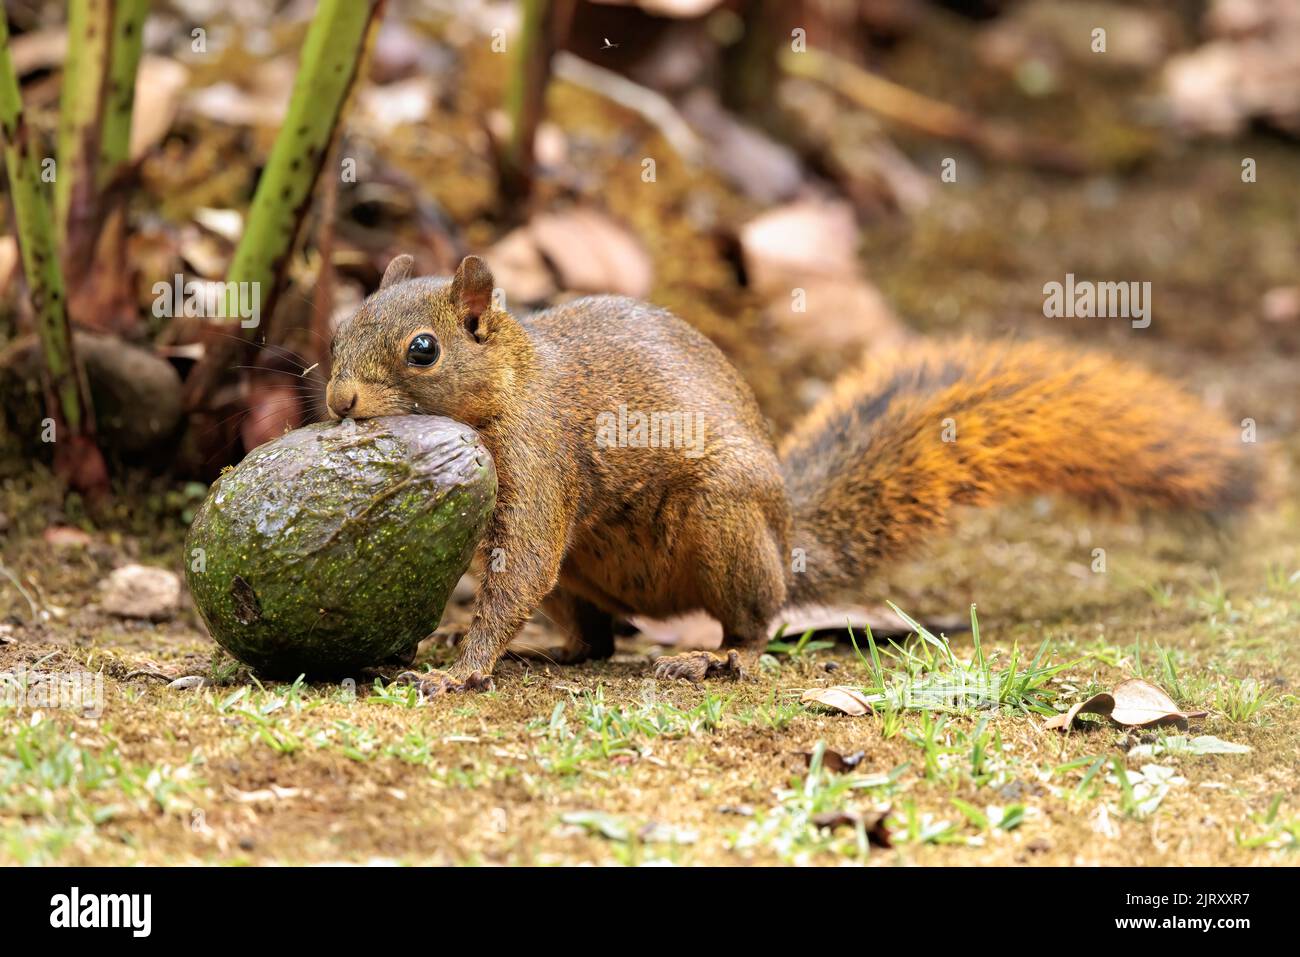 Grey squirrel (Sciurus carolinensis) eating a green avocado on a concrete ground Stock Photo